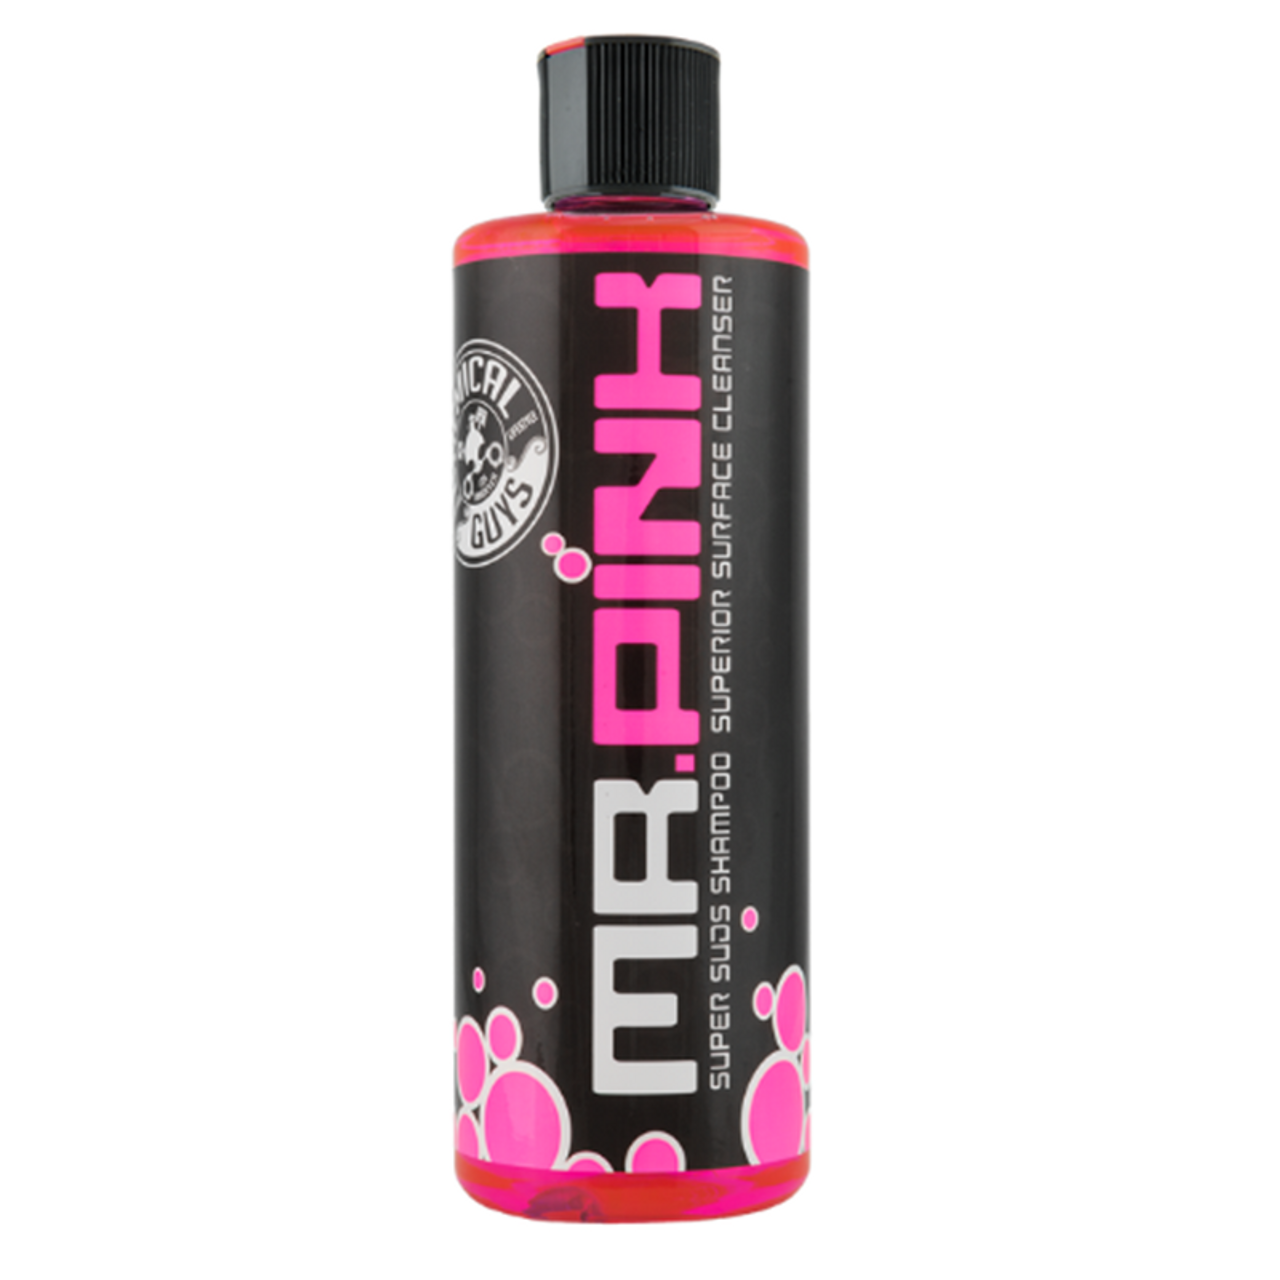 Mr. Pink Super Suds Surface Cleaner Car Wash Shampoo 16oz